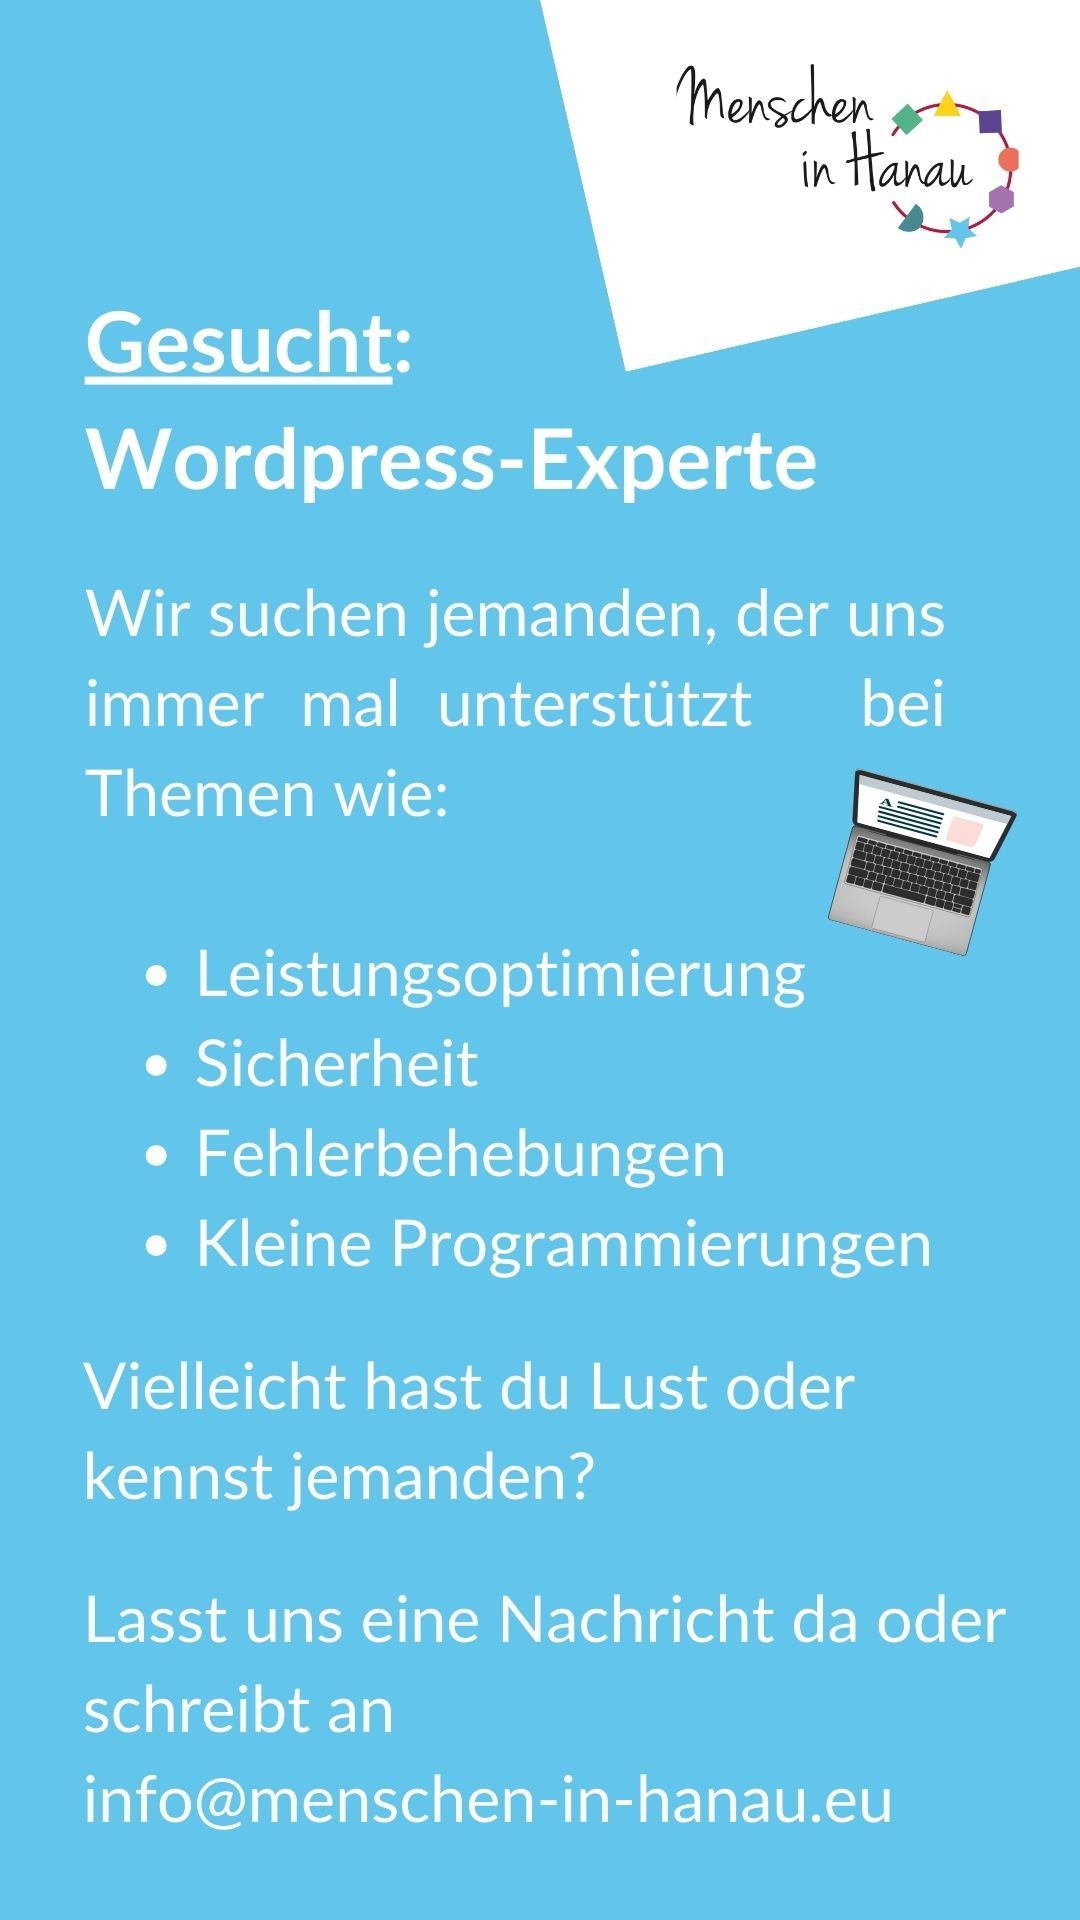 Flyer zum Gesuch nach einem Wordpress Experten. Schrift ist auf hellblauem Hintergrund. Ein Graphik-Laptop ist abgebildet.